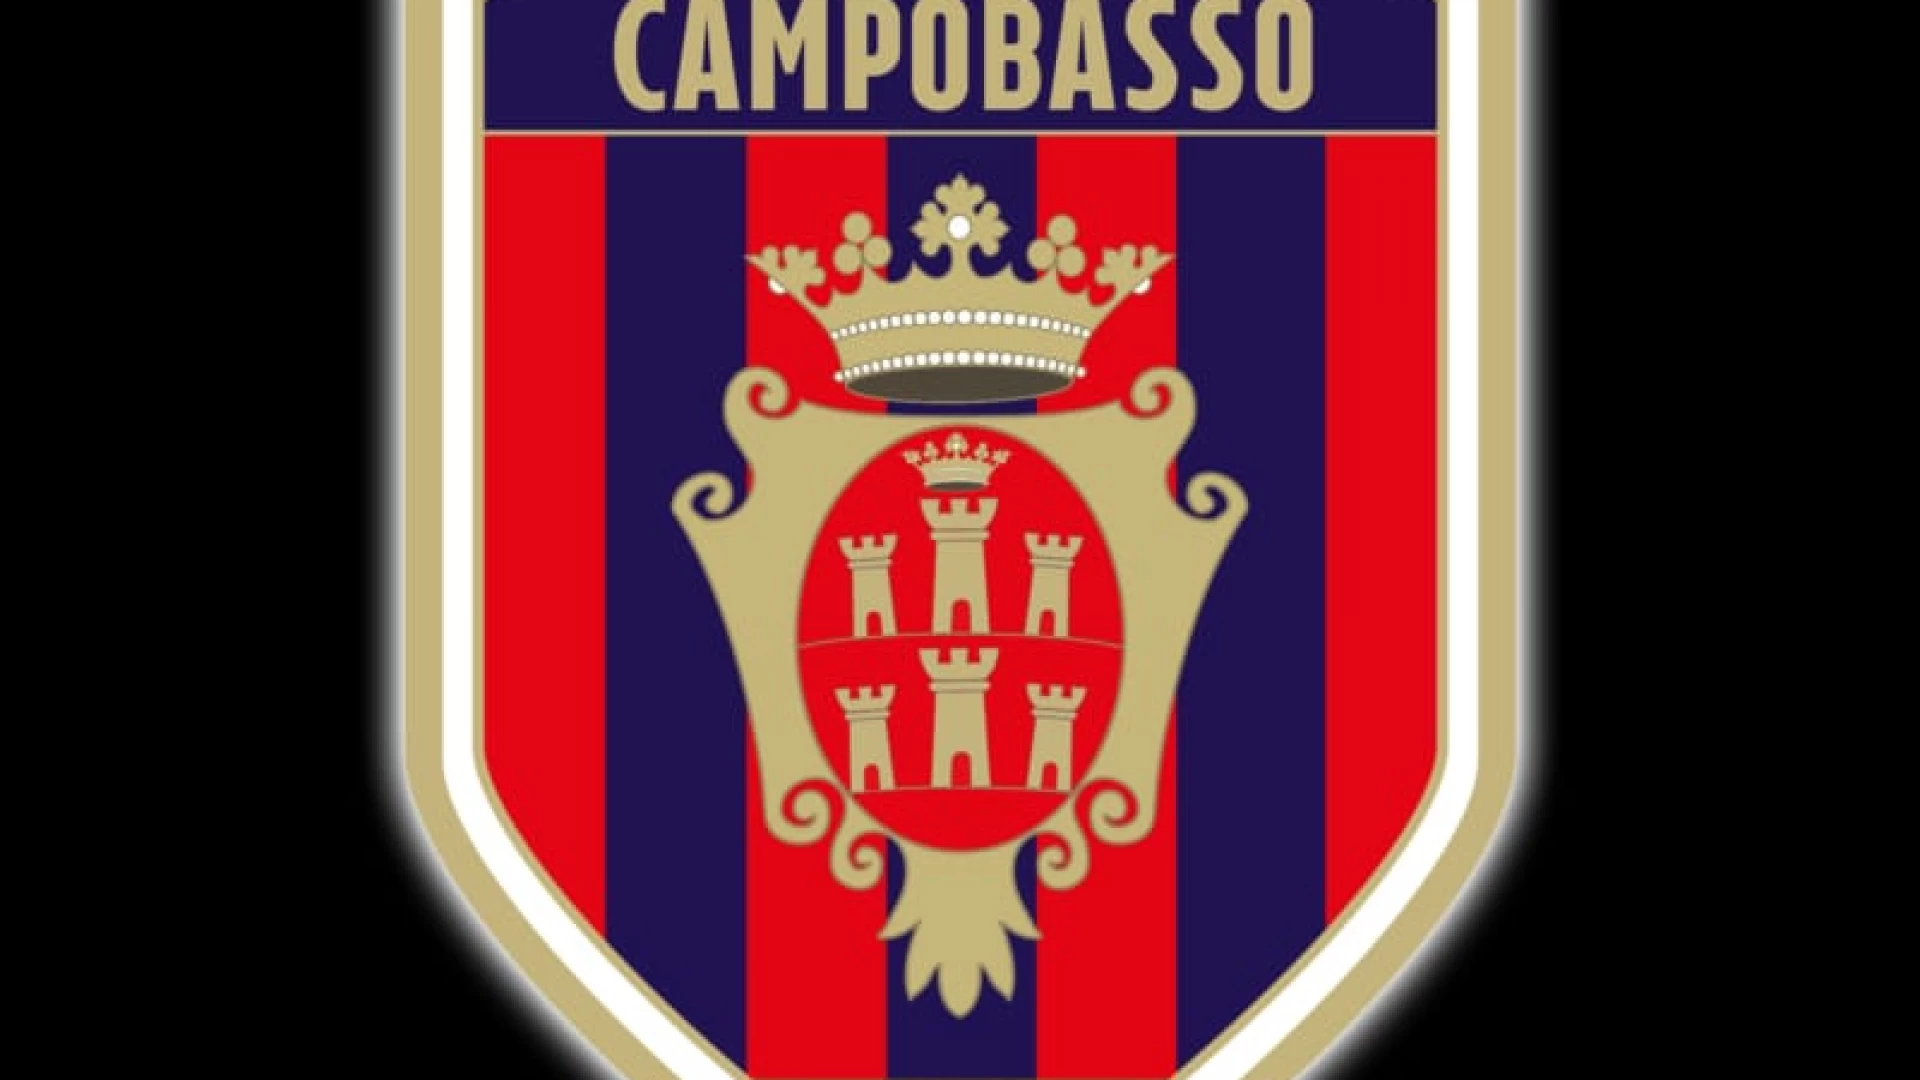 Lega Pro: il Campobasso chiede di far partire il campionato di C con ammissione con “riserva”. La lettera inviata al presidente di Lega Ghirelli.